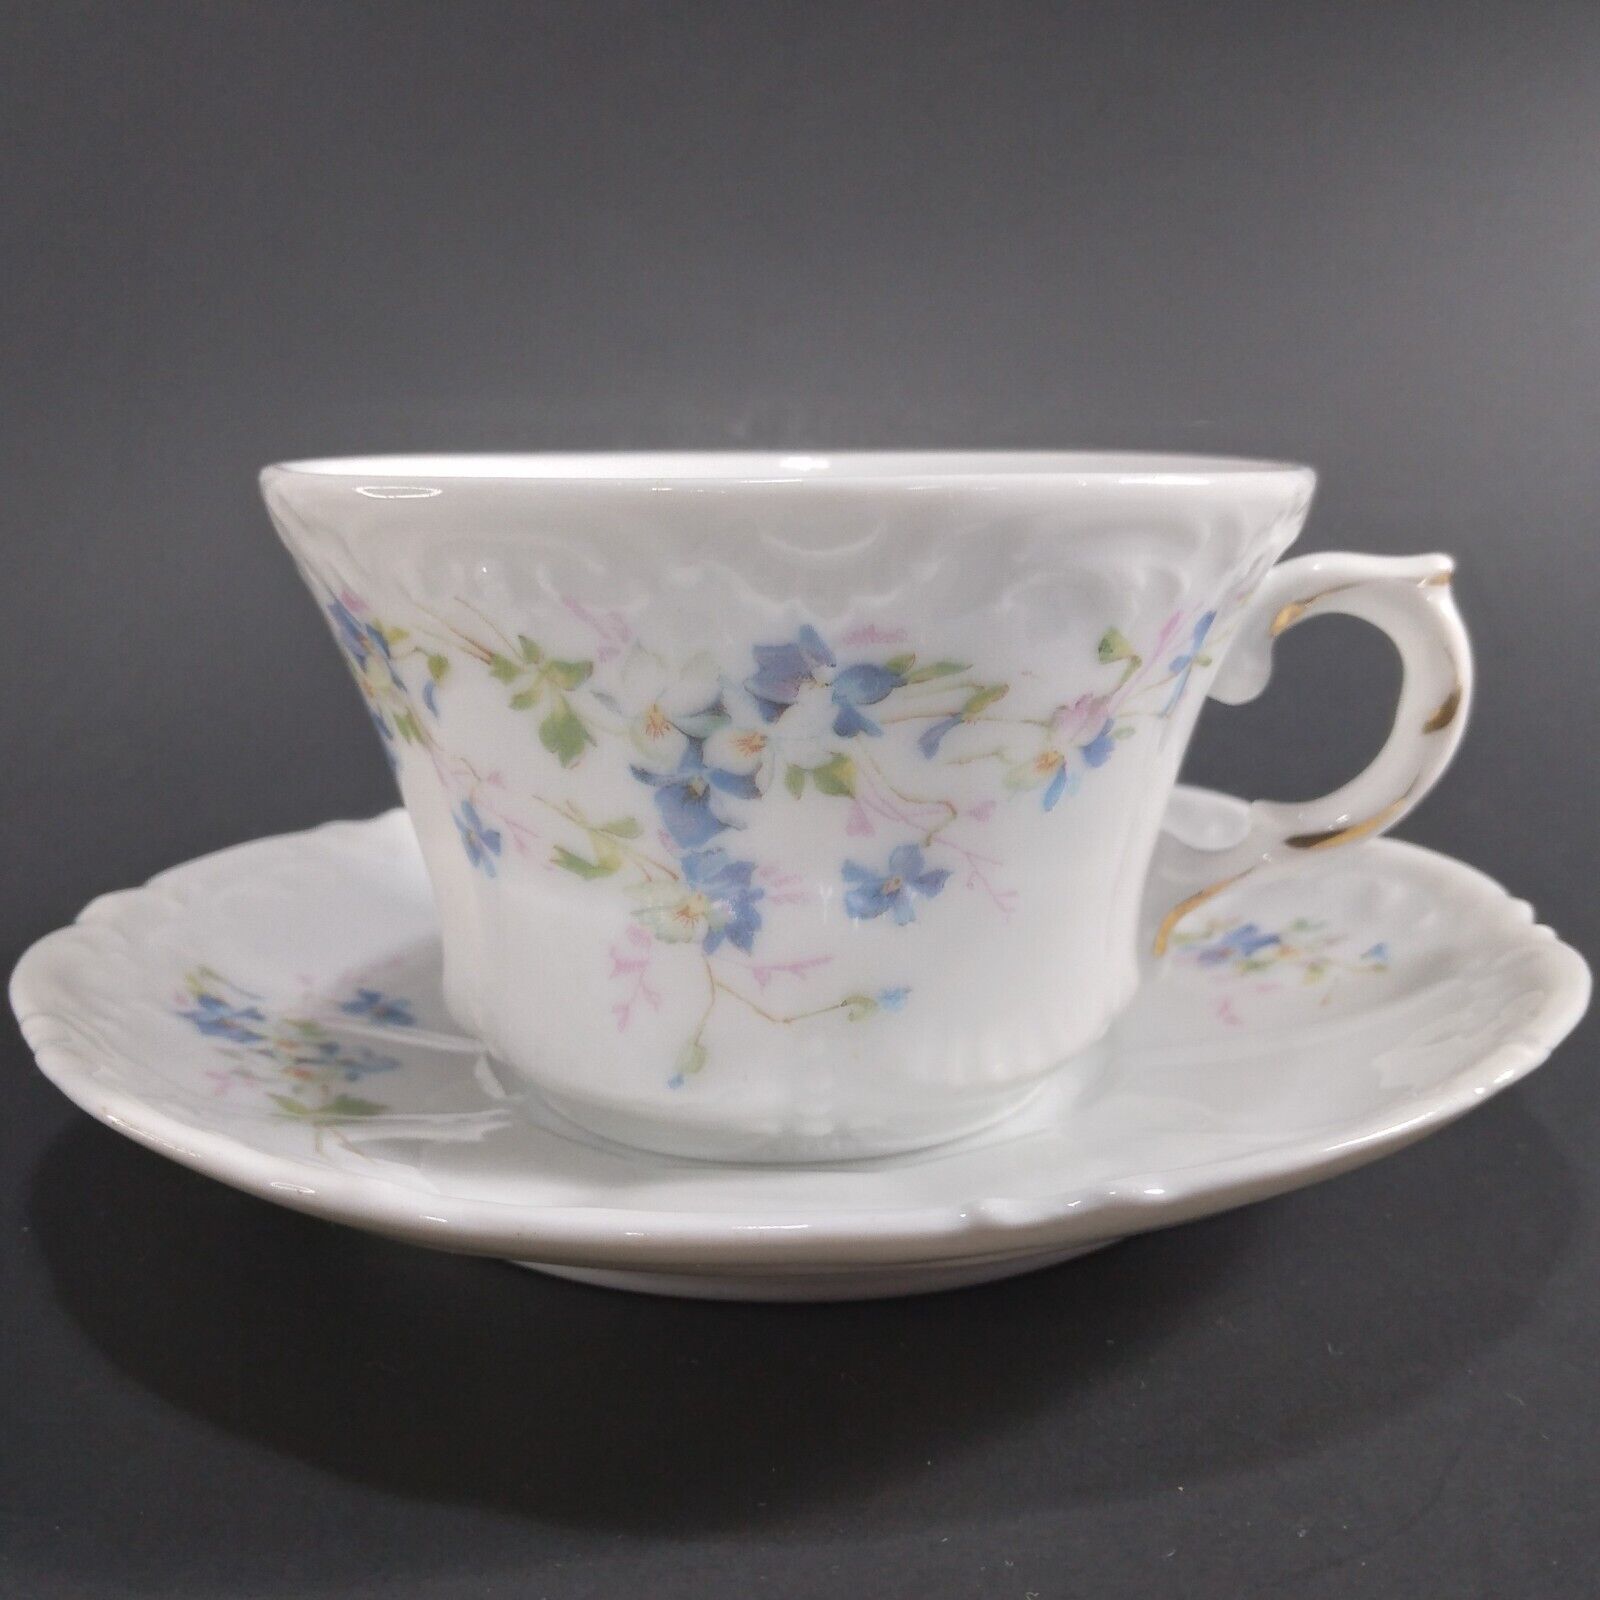 Antique Vintage Teacup & Saucer Set Weimar Germany Blue Violet Floral Pattern